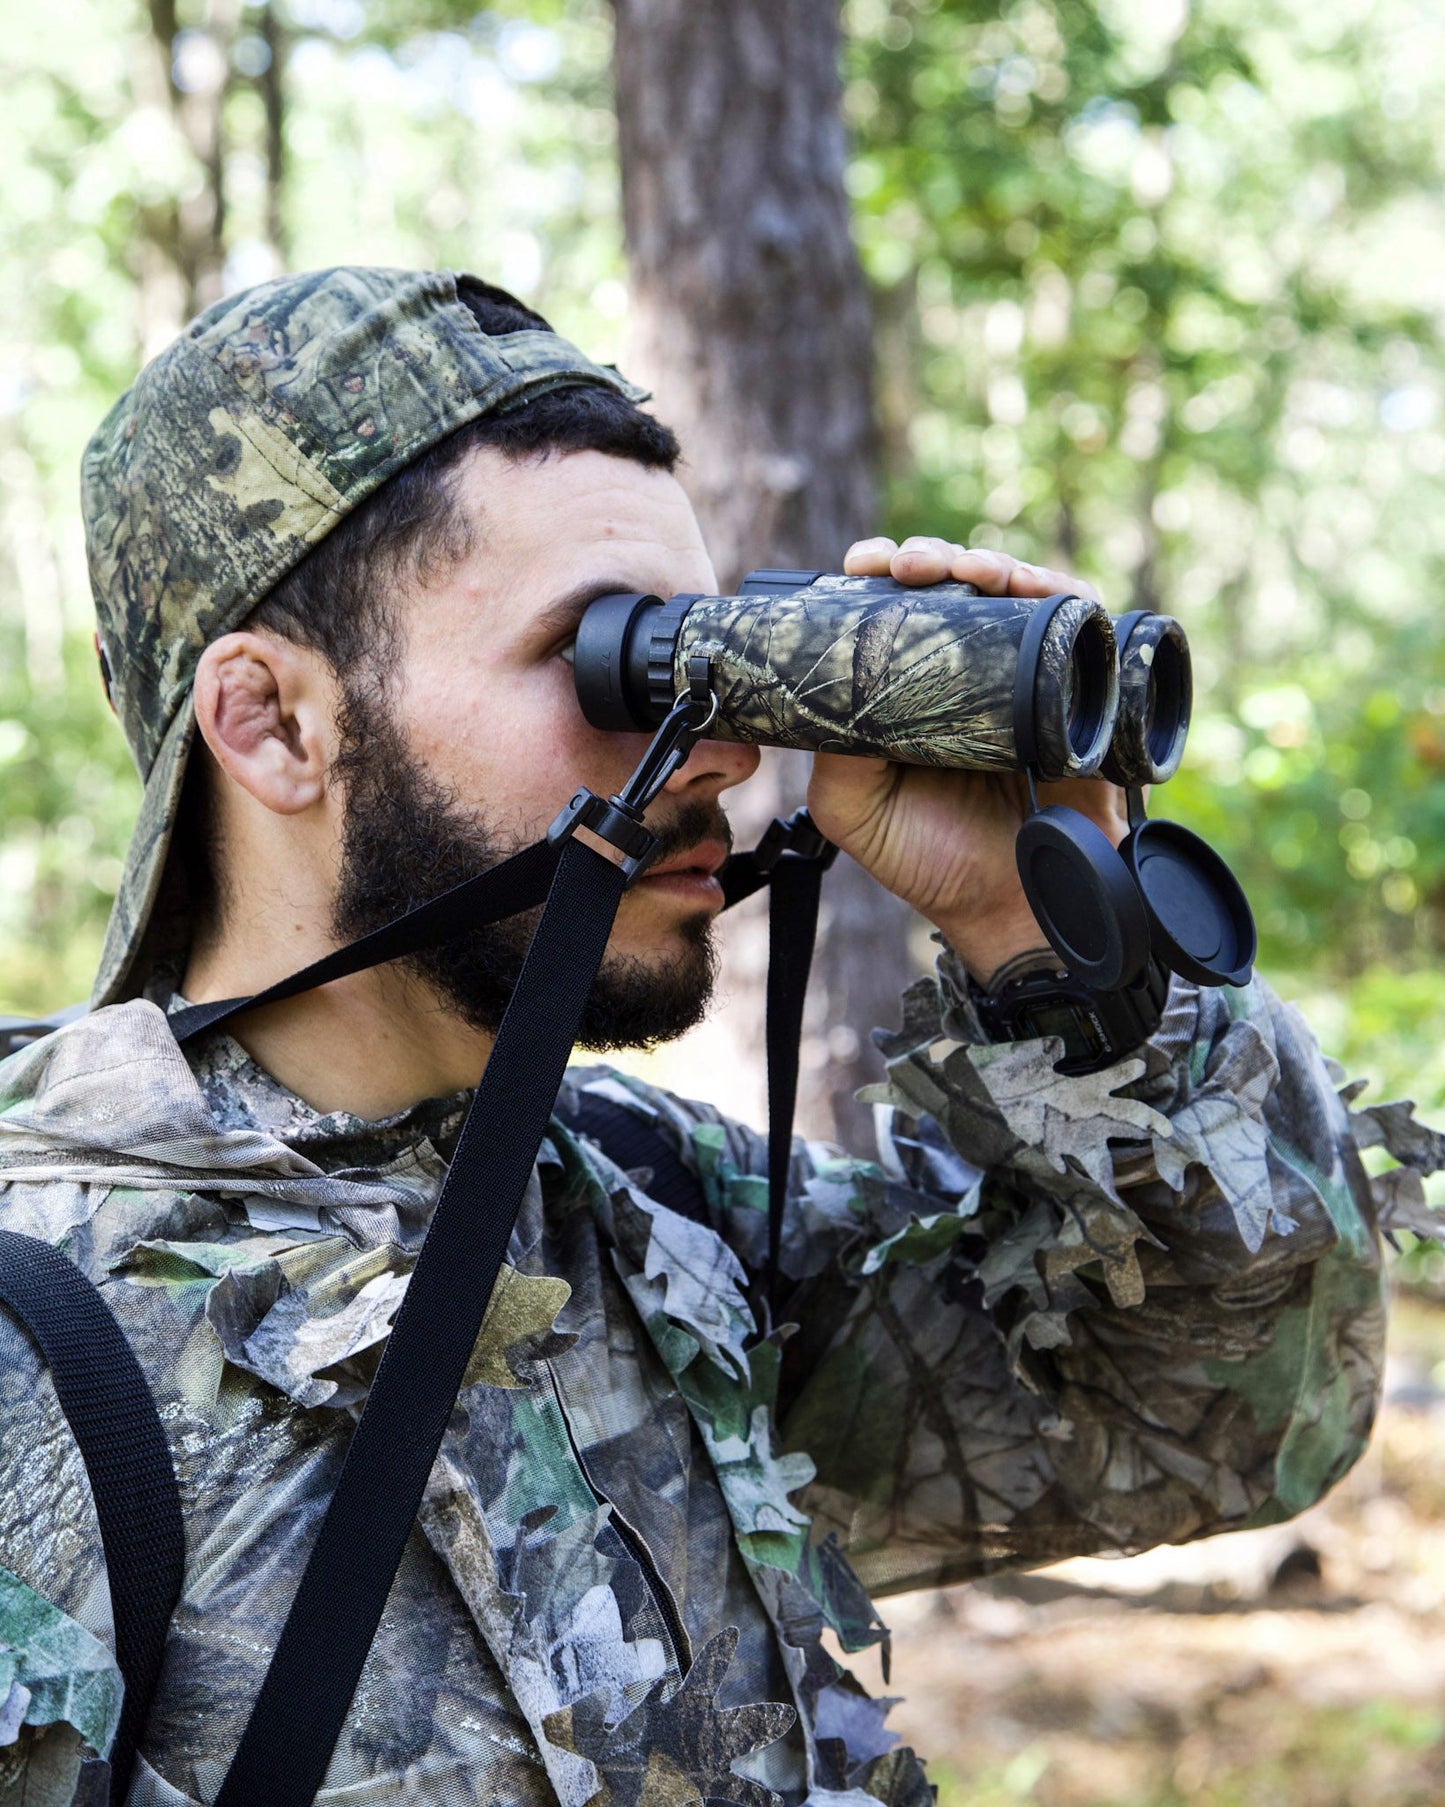 Carson JR Series 10x42mm Full-Sized Waterproof Binoculars Mossy Oak Camouflage JR-042MO